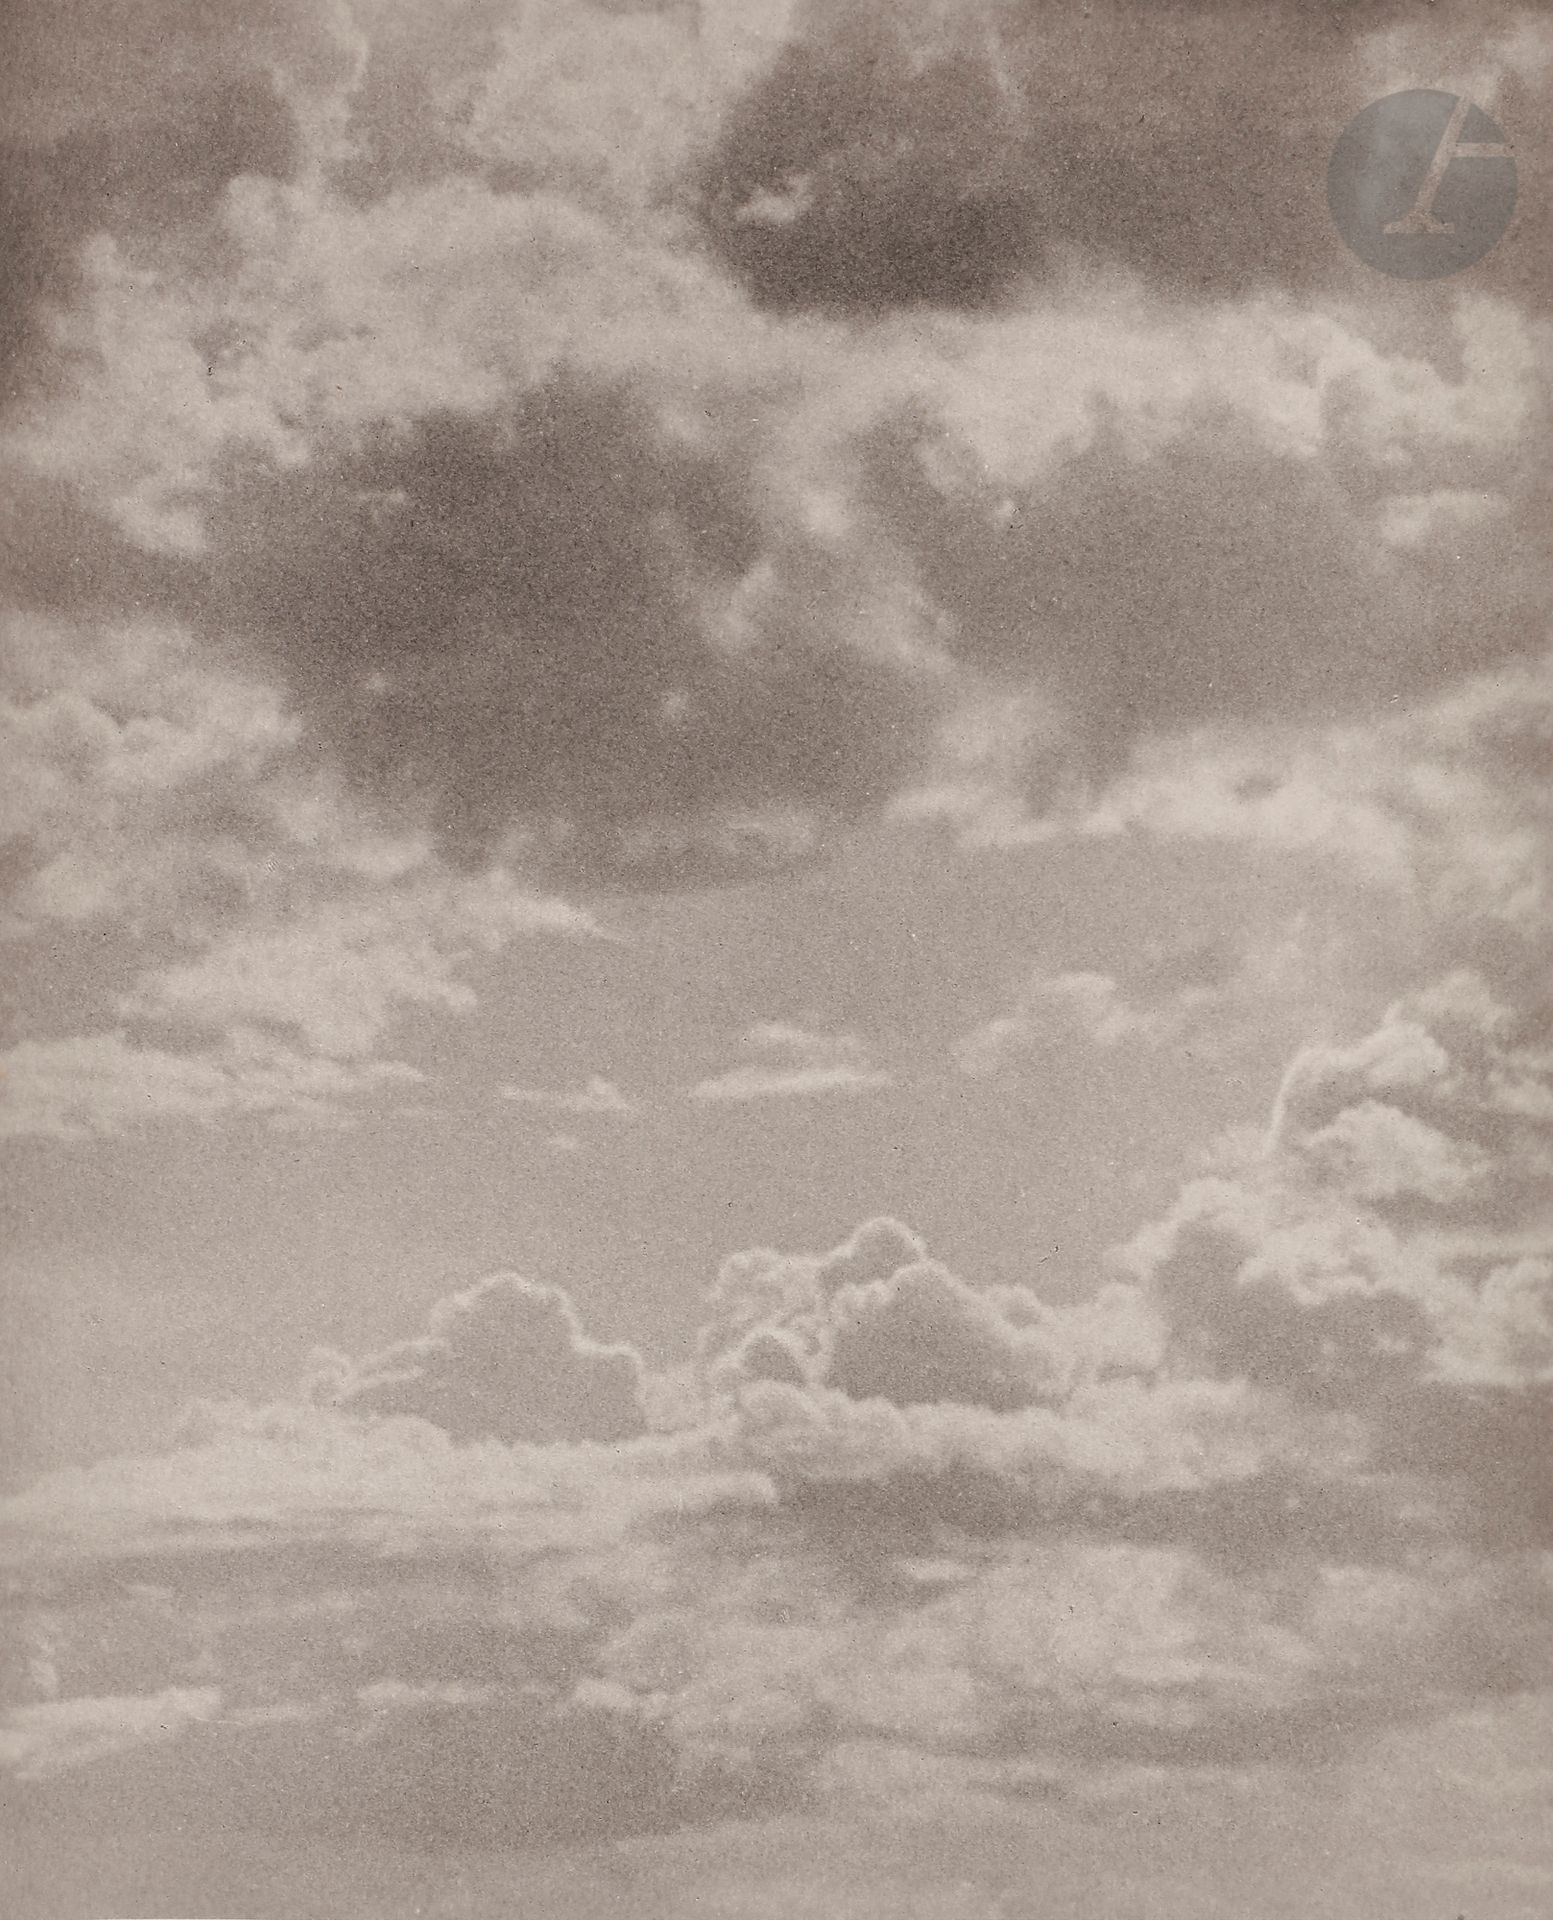 Null Laure Albin Guillot (1879-1962)
Ciels. Seize images photographiques de Laur&hellip;